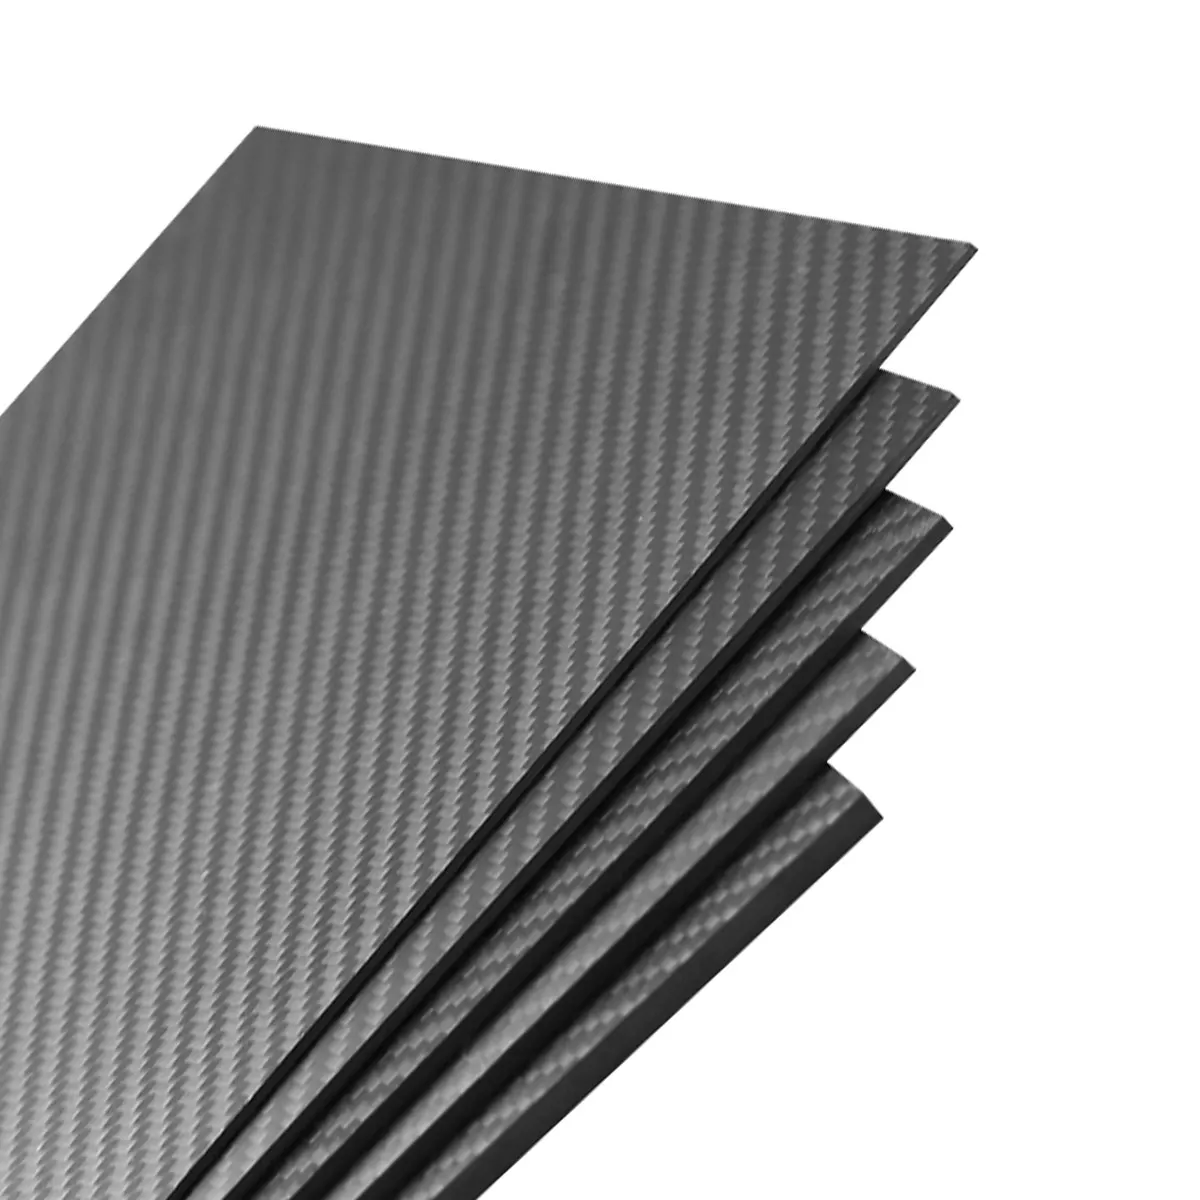 500x400x1.5mm Carbon Fiber Sheet Panel 3k Twill Weave Matt Finish Flaw